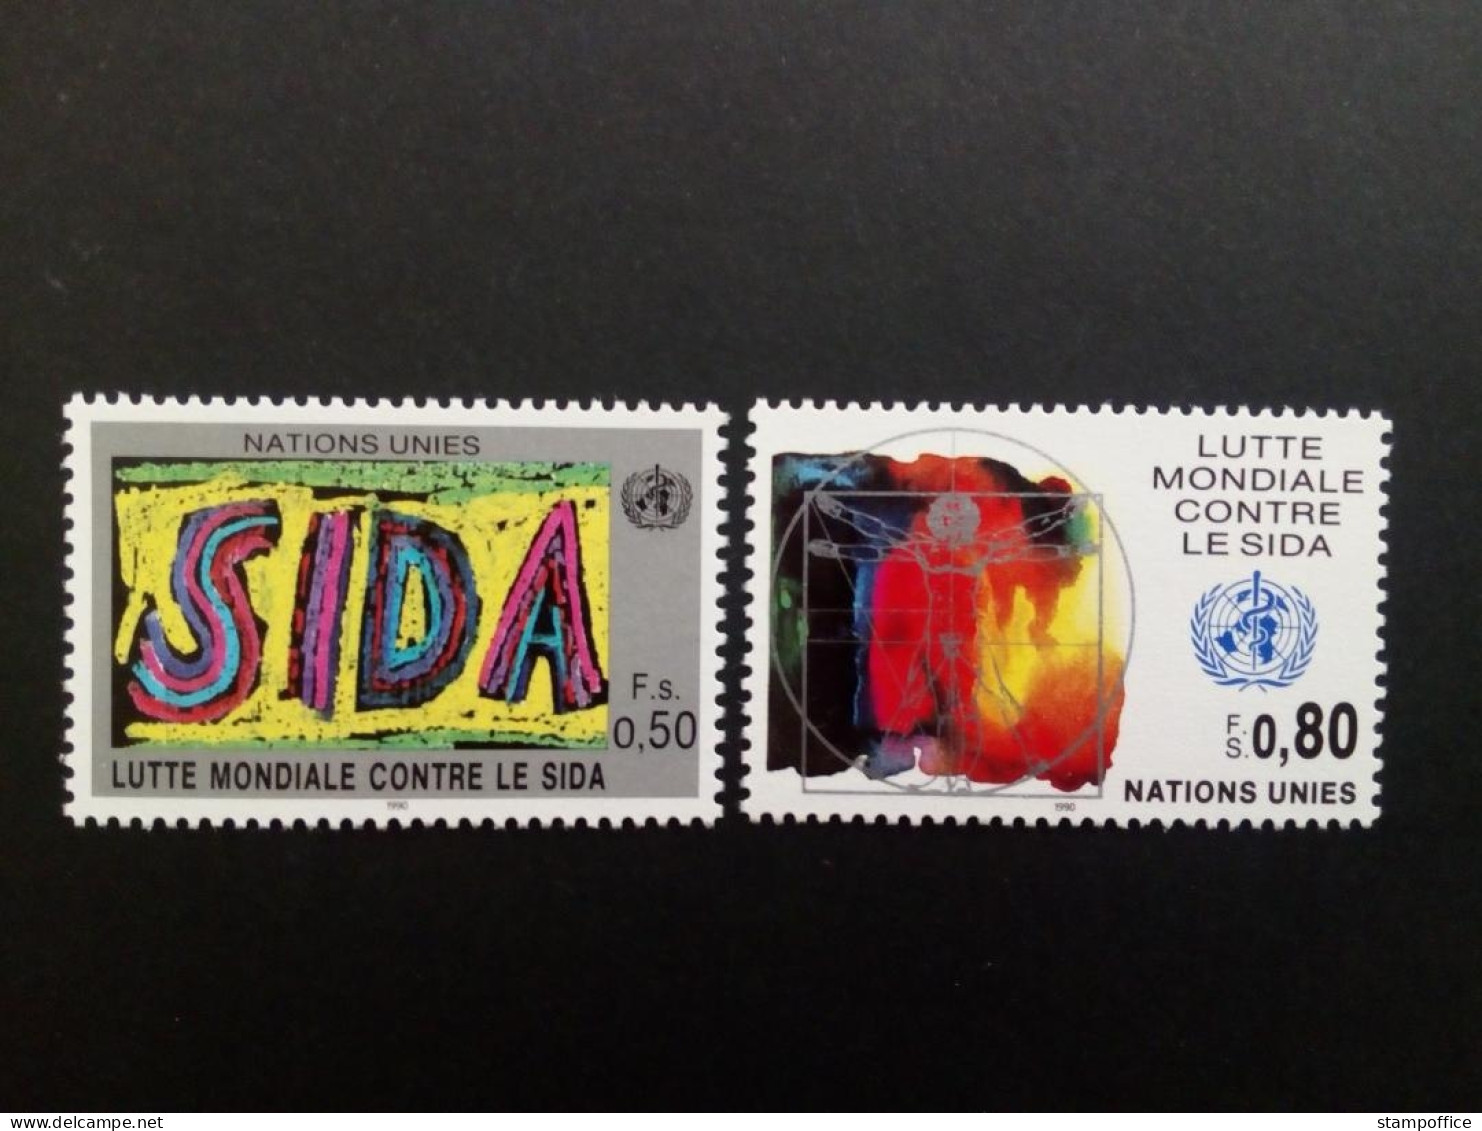 UNO GENF MI-NR. 184-185 POSTFRISCH WELTWEITE AIDS BEKÄMPFUNG 1990 - Unused Stamps